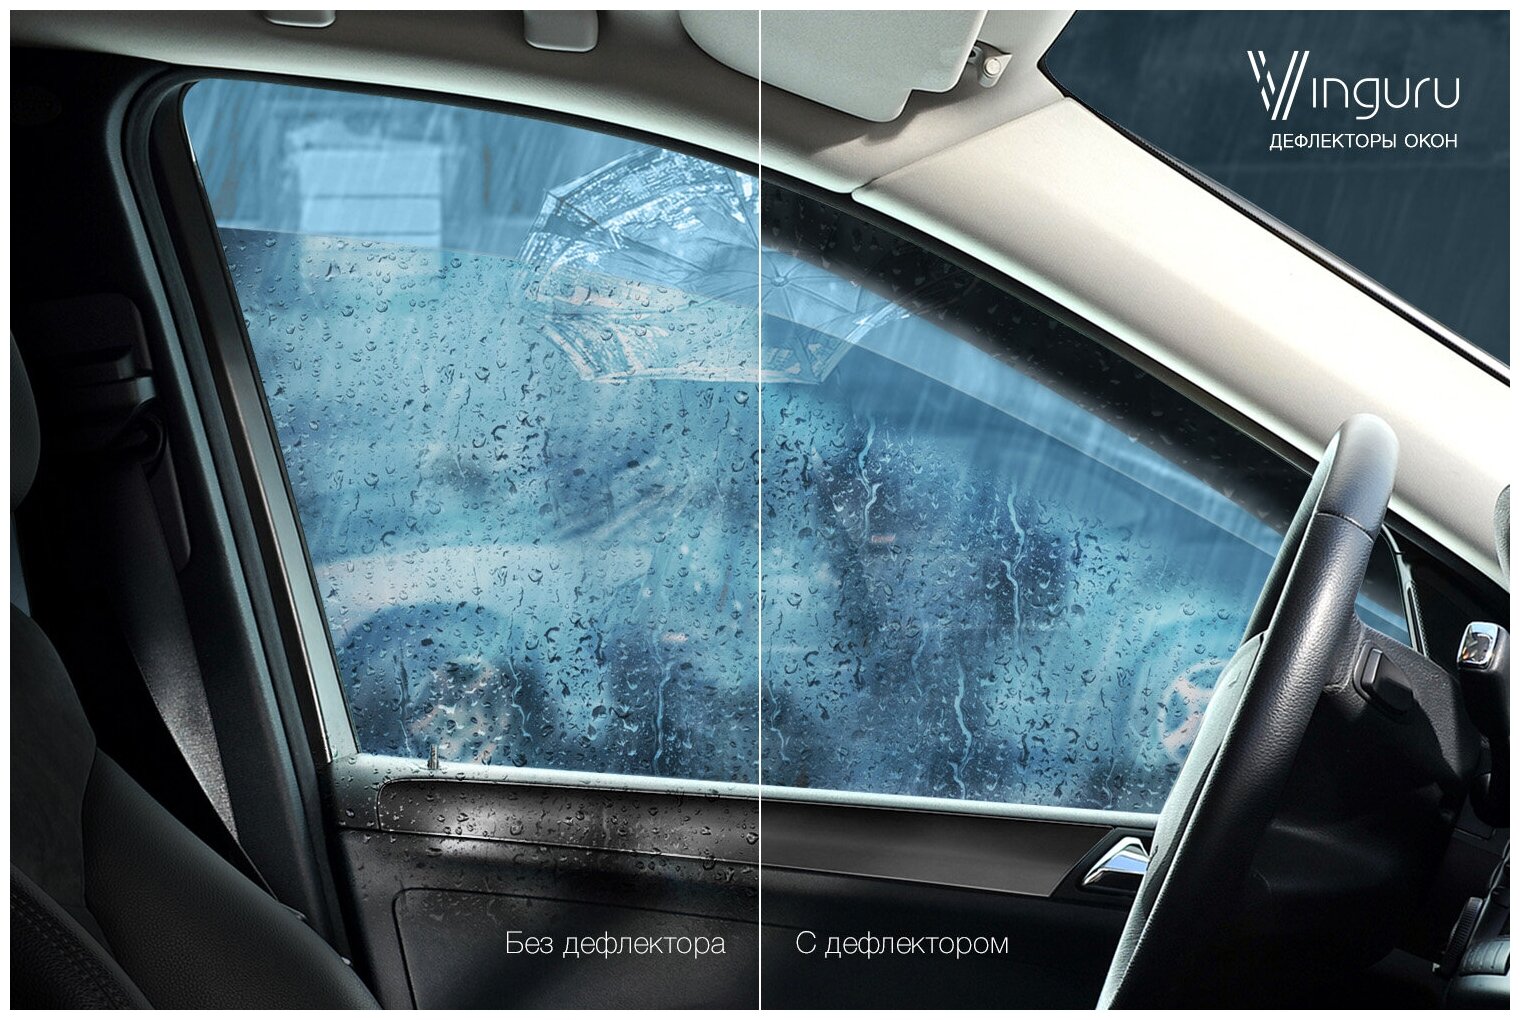 Дефлекторы окон Vinguru Renault Sandero II 2014- хэтчбек накладные литьевой поликарбонат скотч 4 шт - фото №7